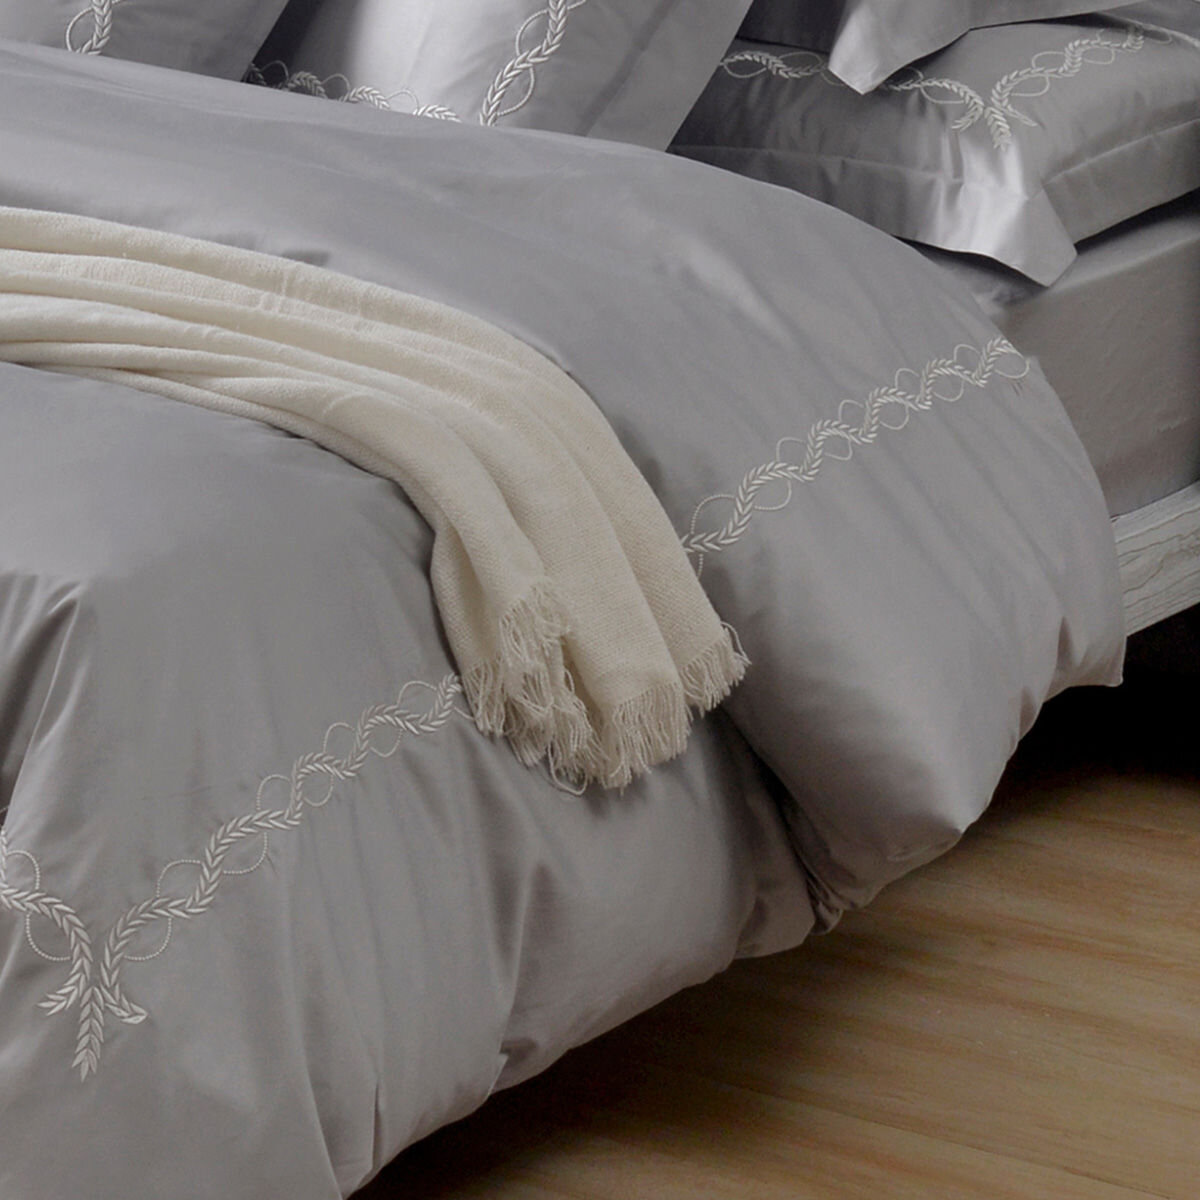 La Belle 雙人300織純棉刺繡被套床包4件組 150公分 X 186公分 藤蔓款 白銀灰